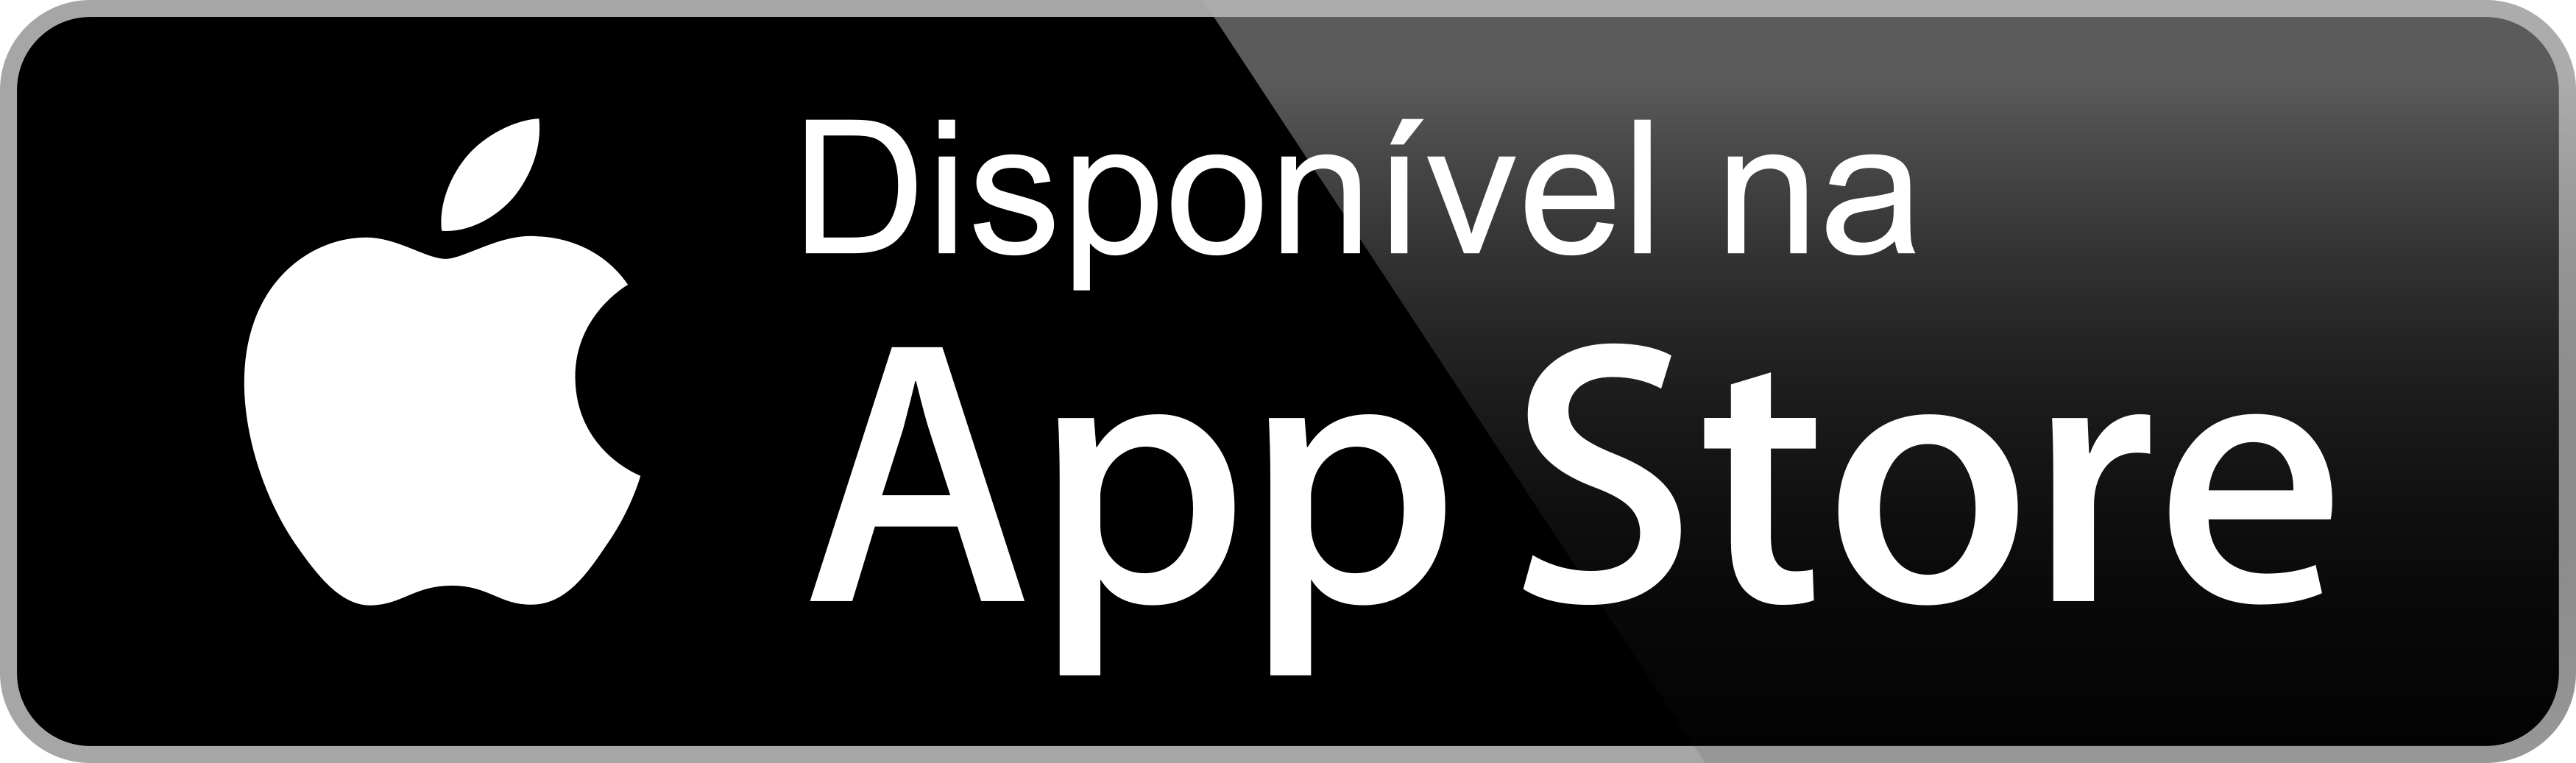 disponivel na app store botao - Disponível na App Store - Botão Disponível na App Store